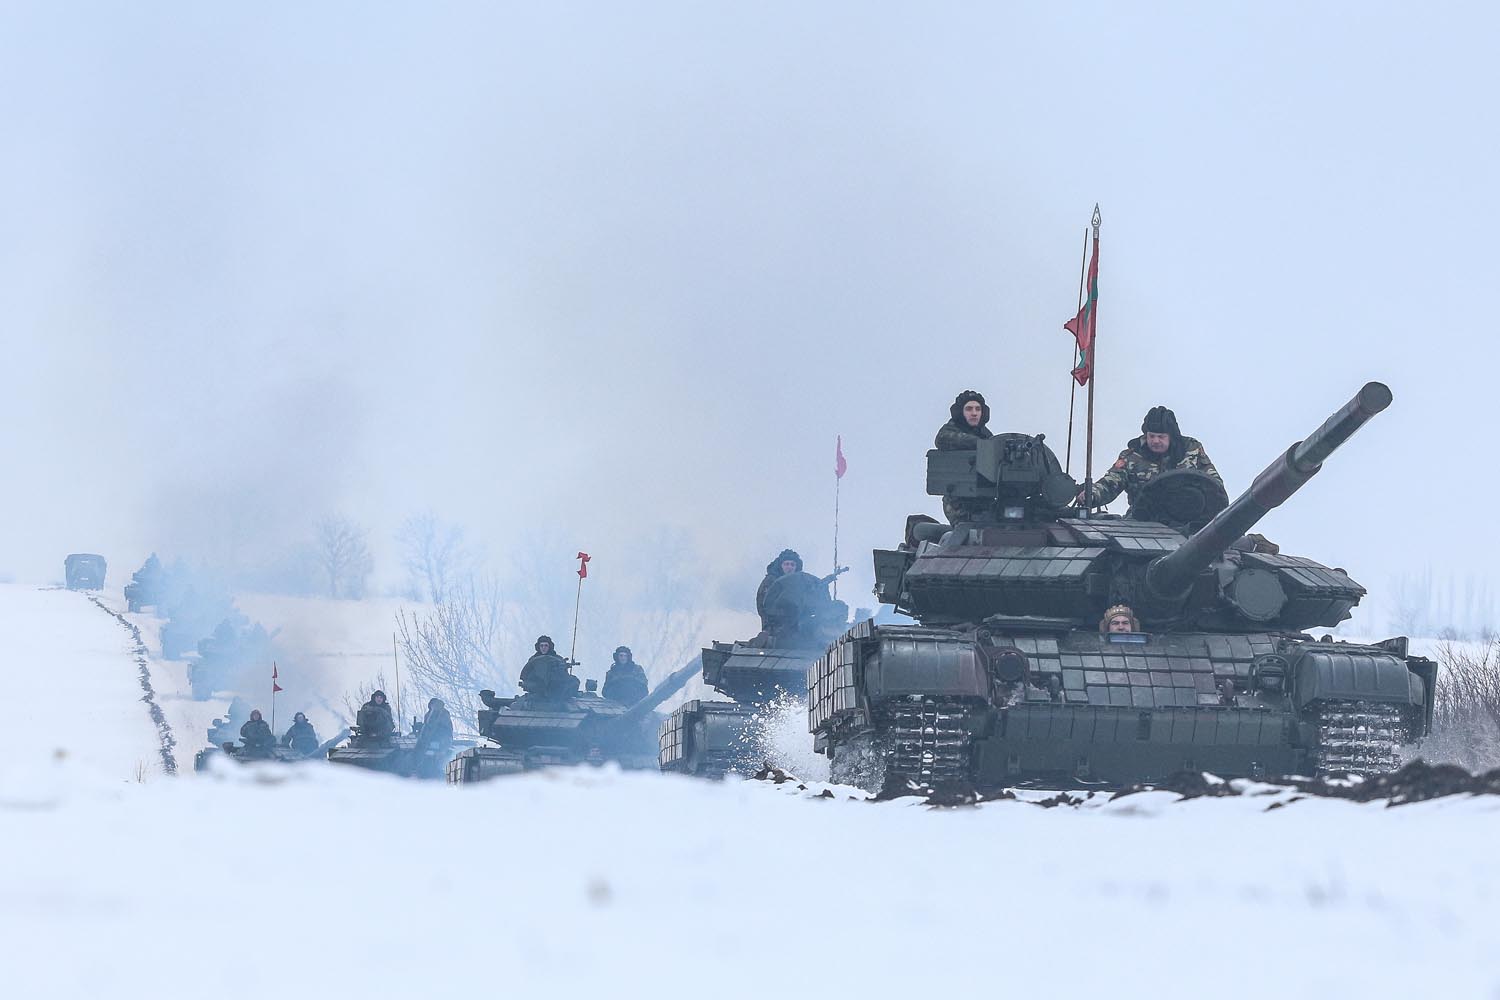 Rușii fac exerciții cu tancuri de-alungul Nistrului